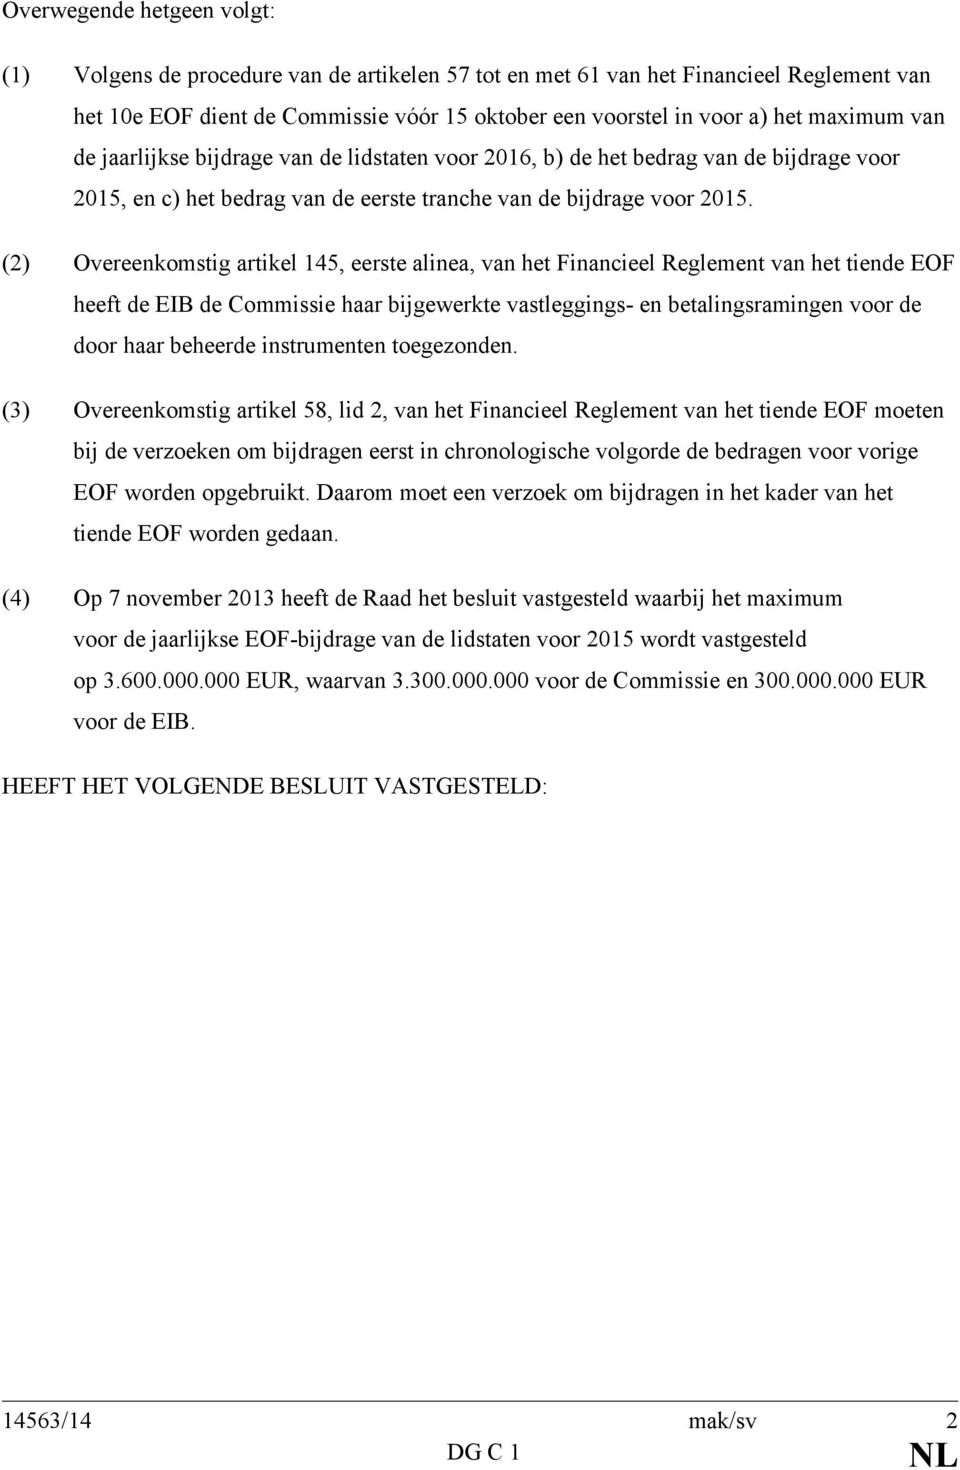 (2) Overeenkomstig artikel 145, eerste alinea, van het Financieel Reglement van het tiende EOF heeft de EIB de Commissie haar bijgewerkte vastleggings- en betalingsramingen voor de door haar beheerde